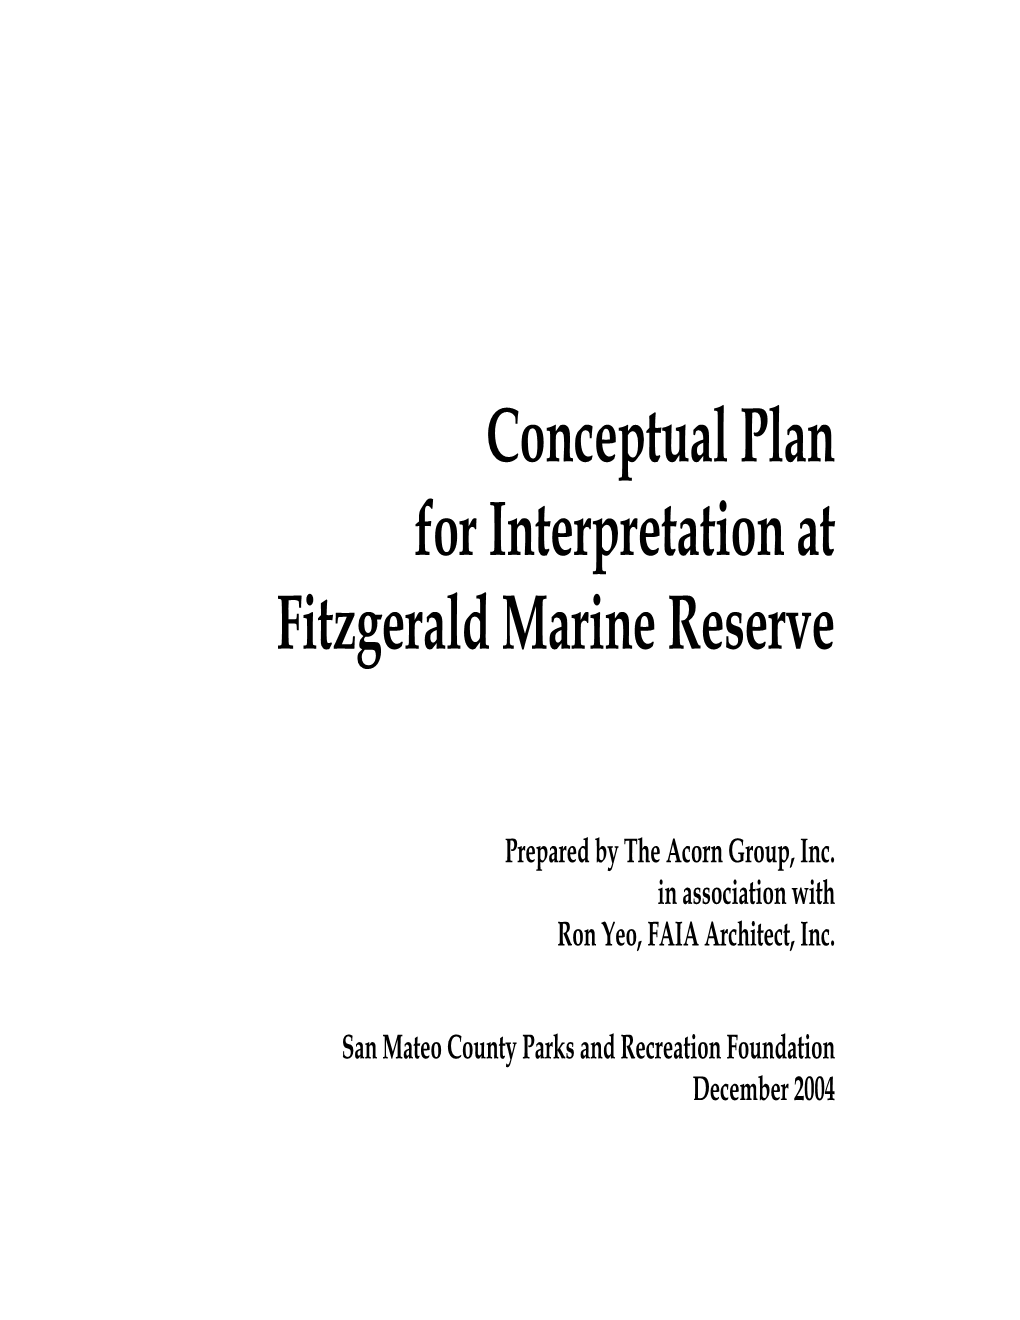 Conceptual Plan for Interpretation at Fitzgerald Marine Reserve